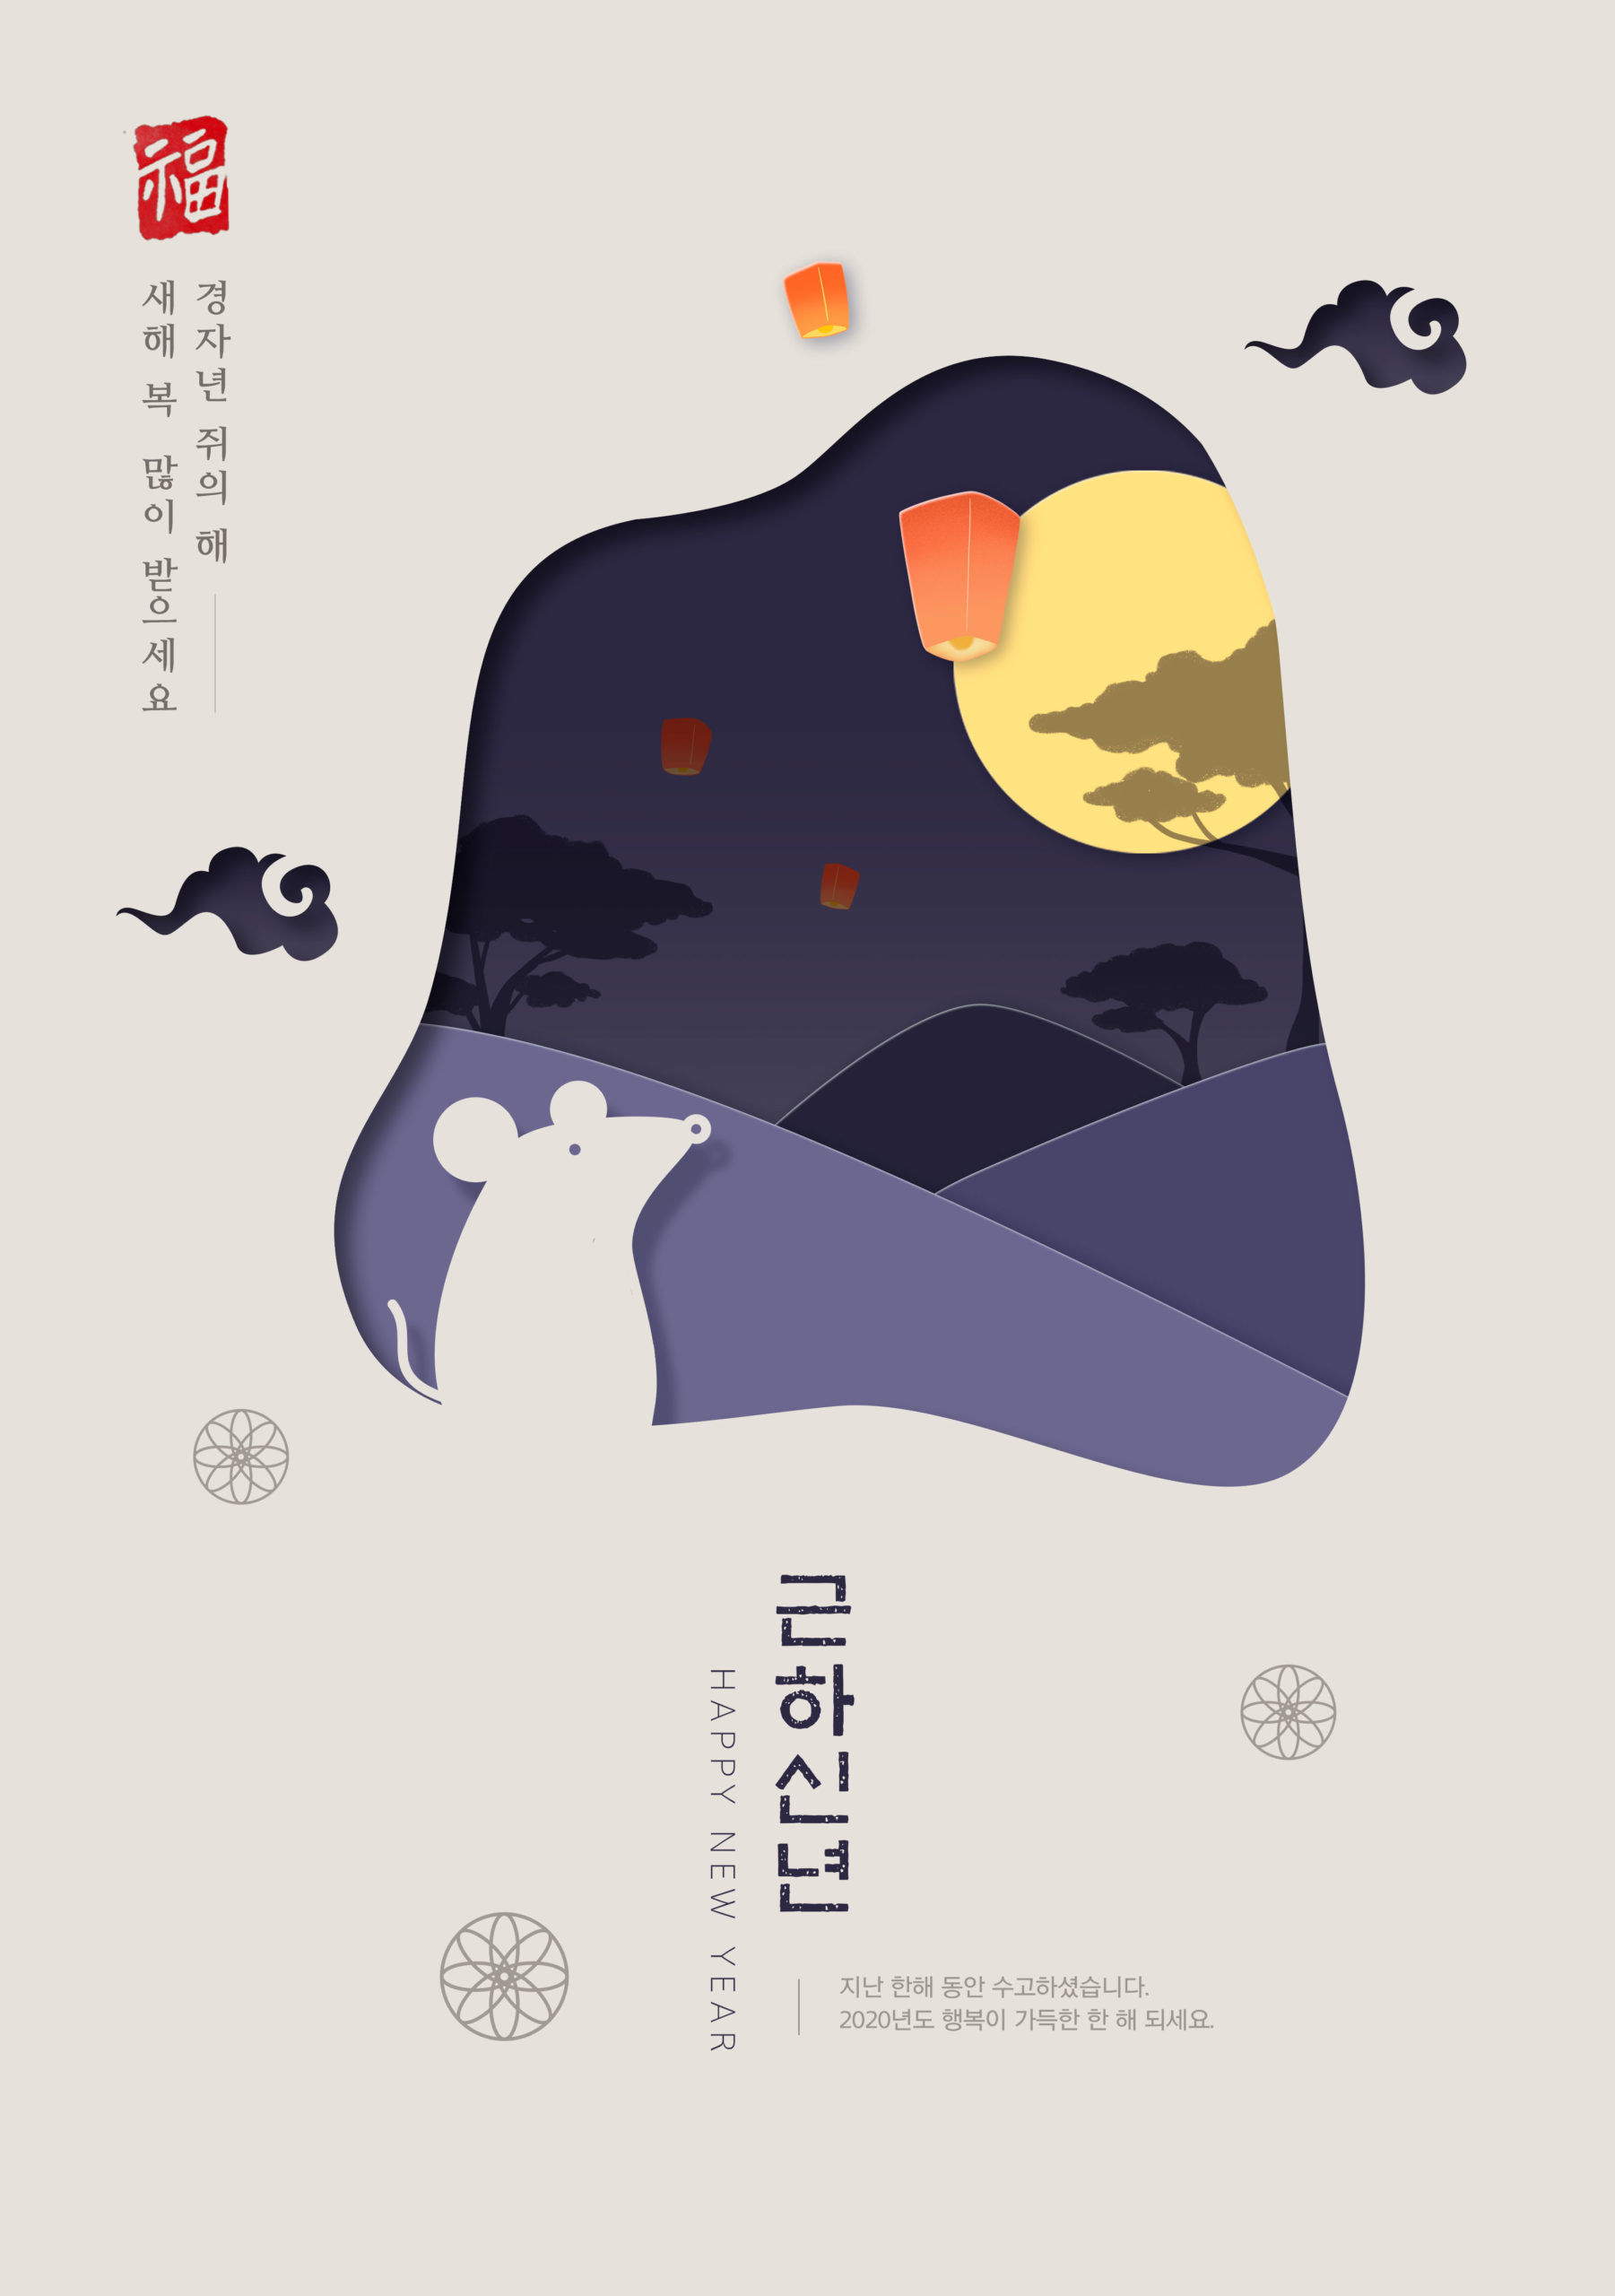 鼠年新春主题韩国海报PSD素材蚂蚁素材精选模板插图